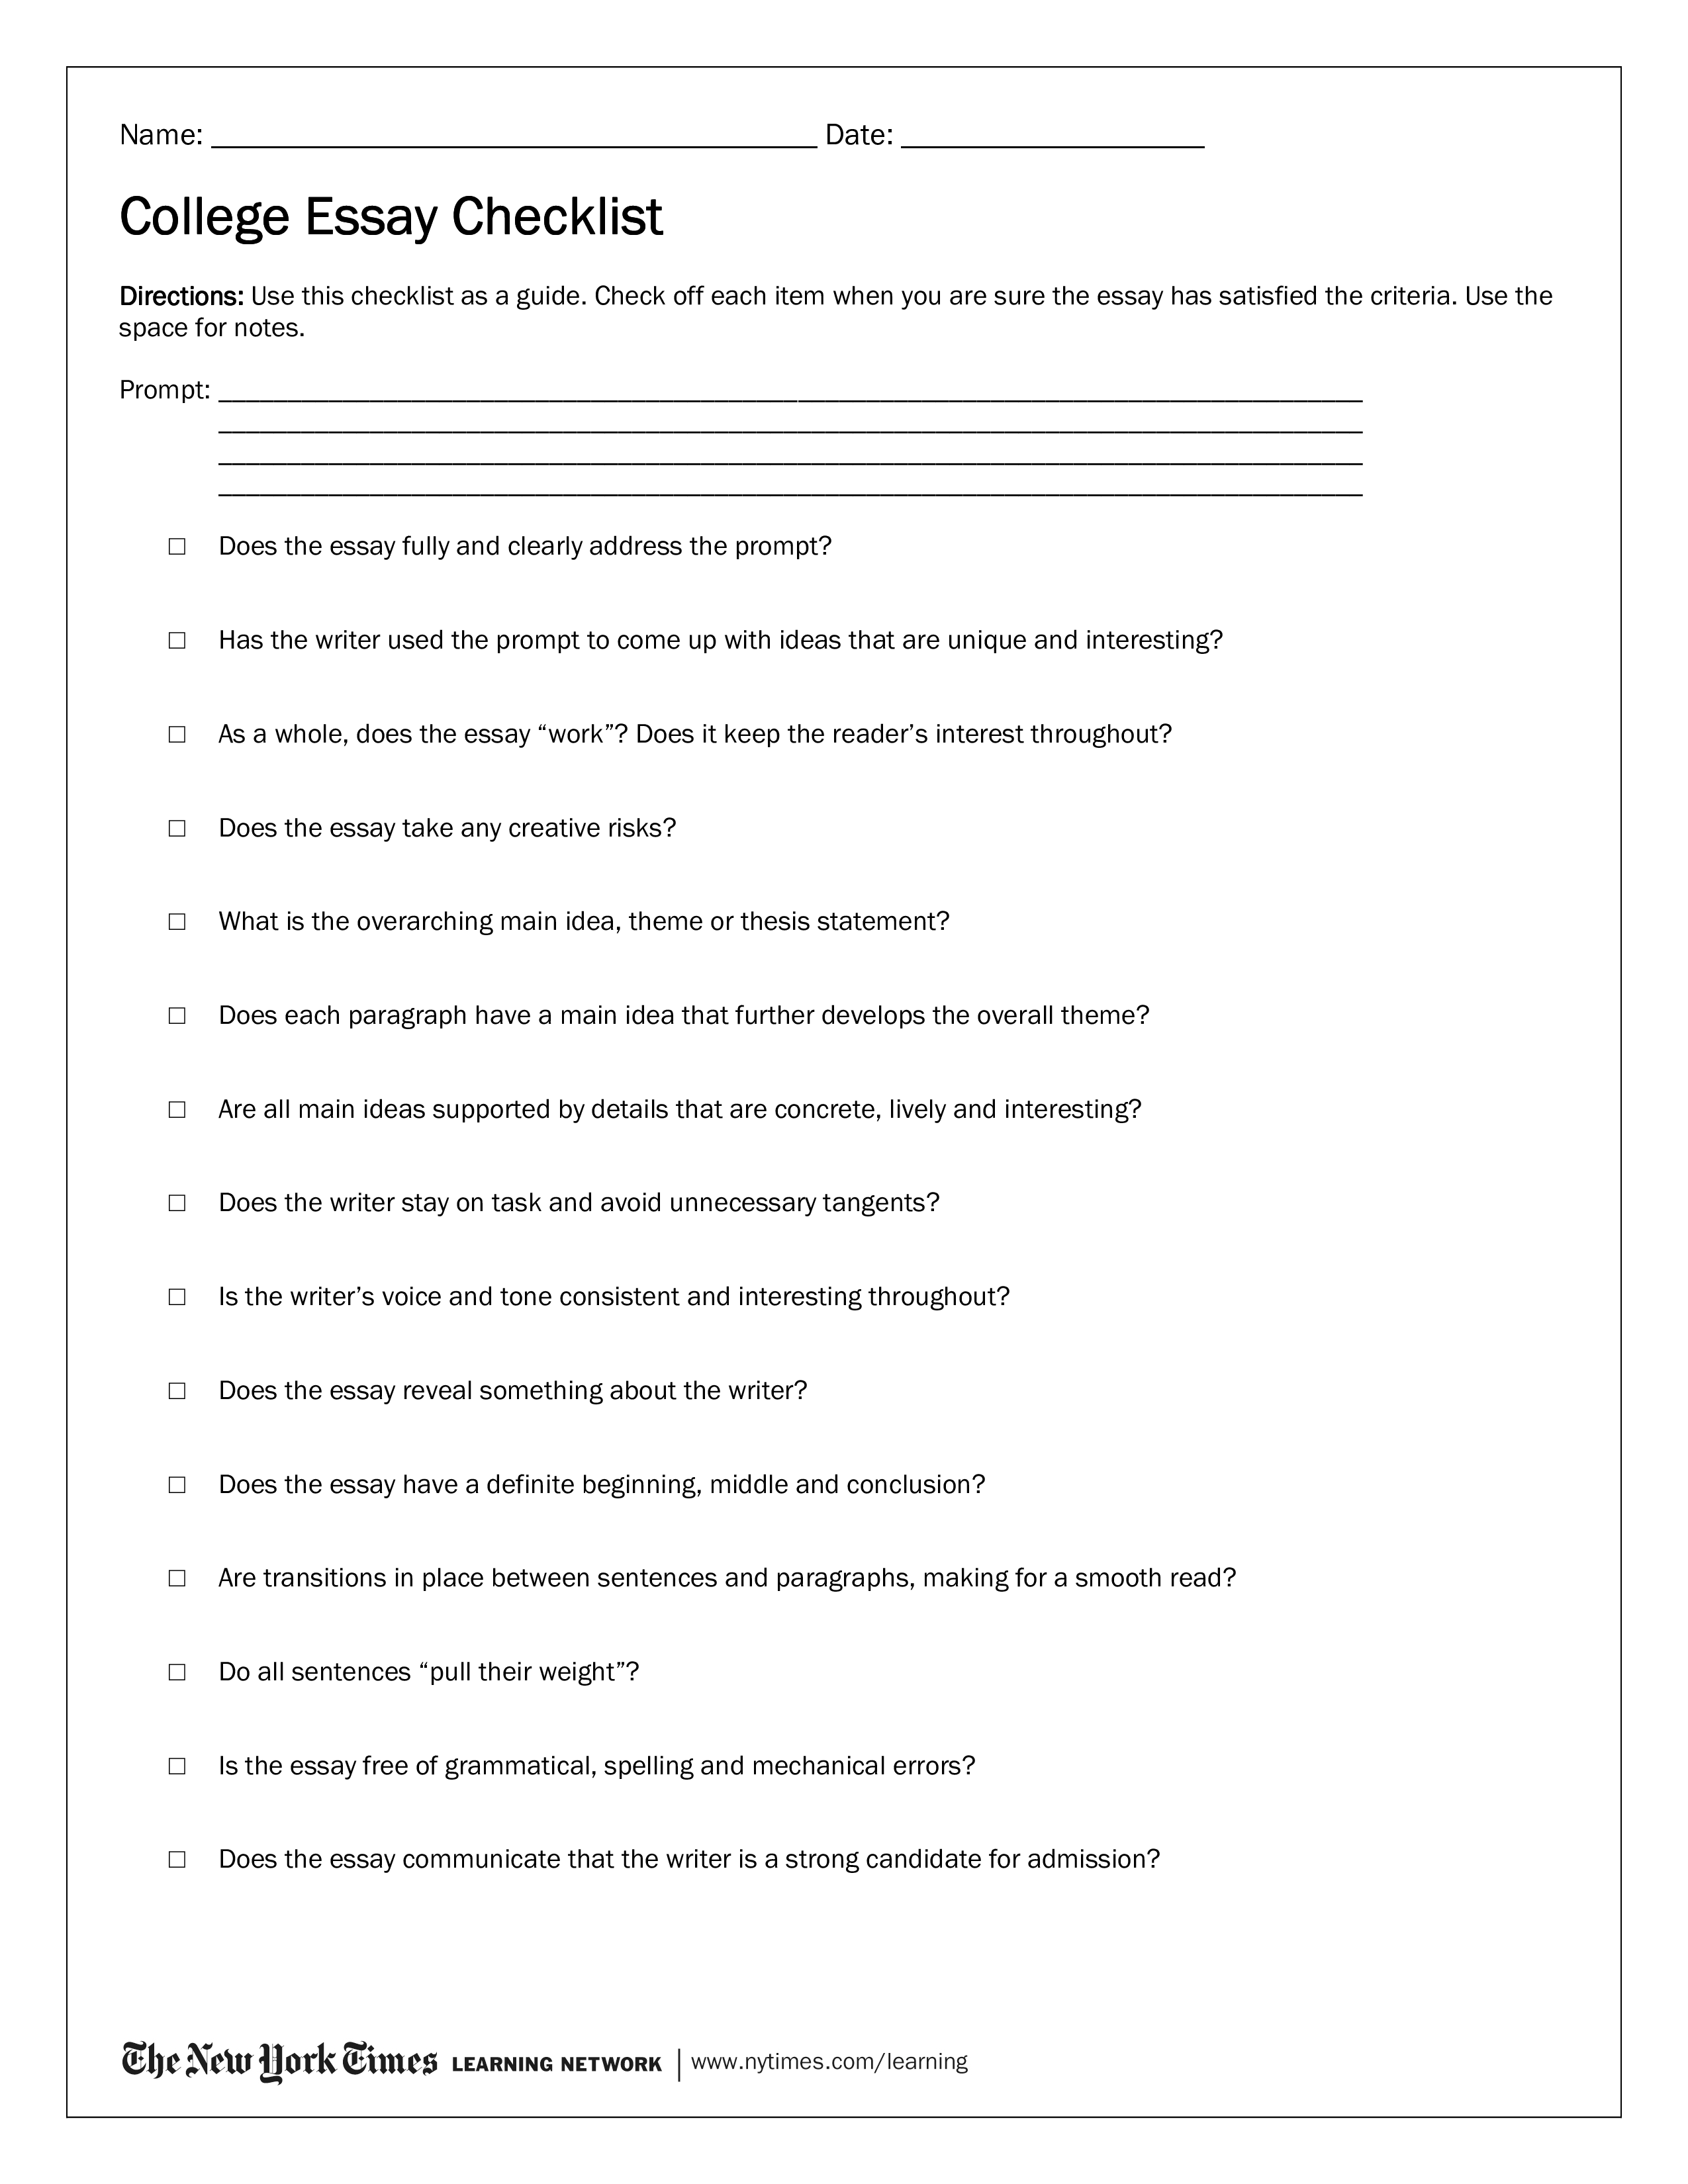 college essay checklist Hauptschablonenbild